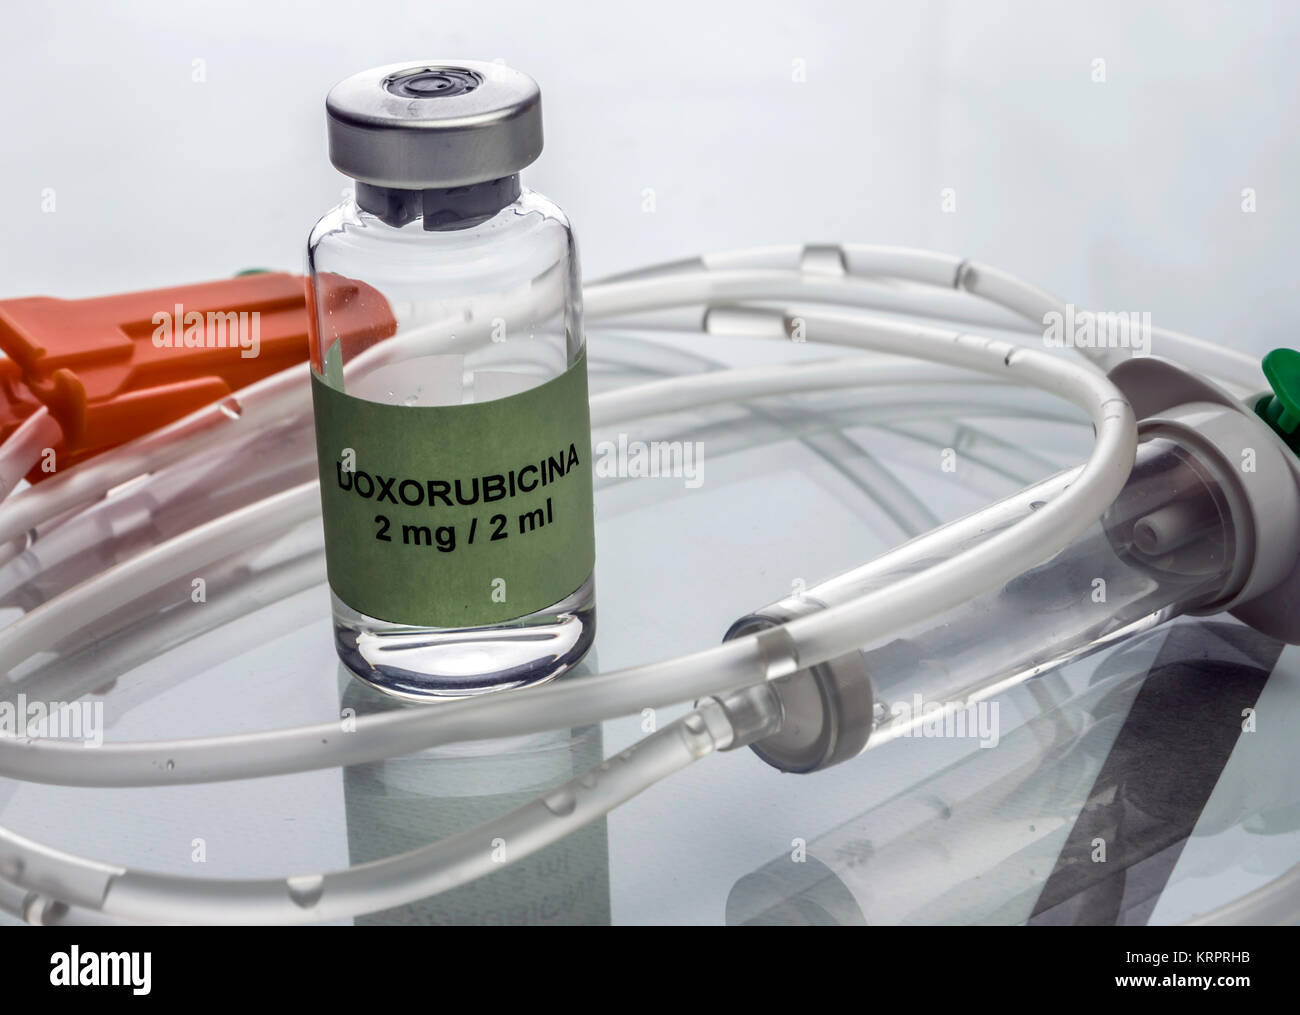 Doxorubicin-Durchstechflasche mit Tropfbewässerung, Medizin für Akute Lymphatische Leukämie Erkrankungen eingesetzt, konzeptionelle Bild Stockfoto